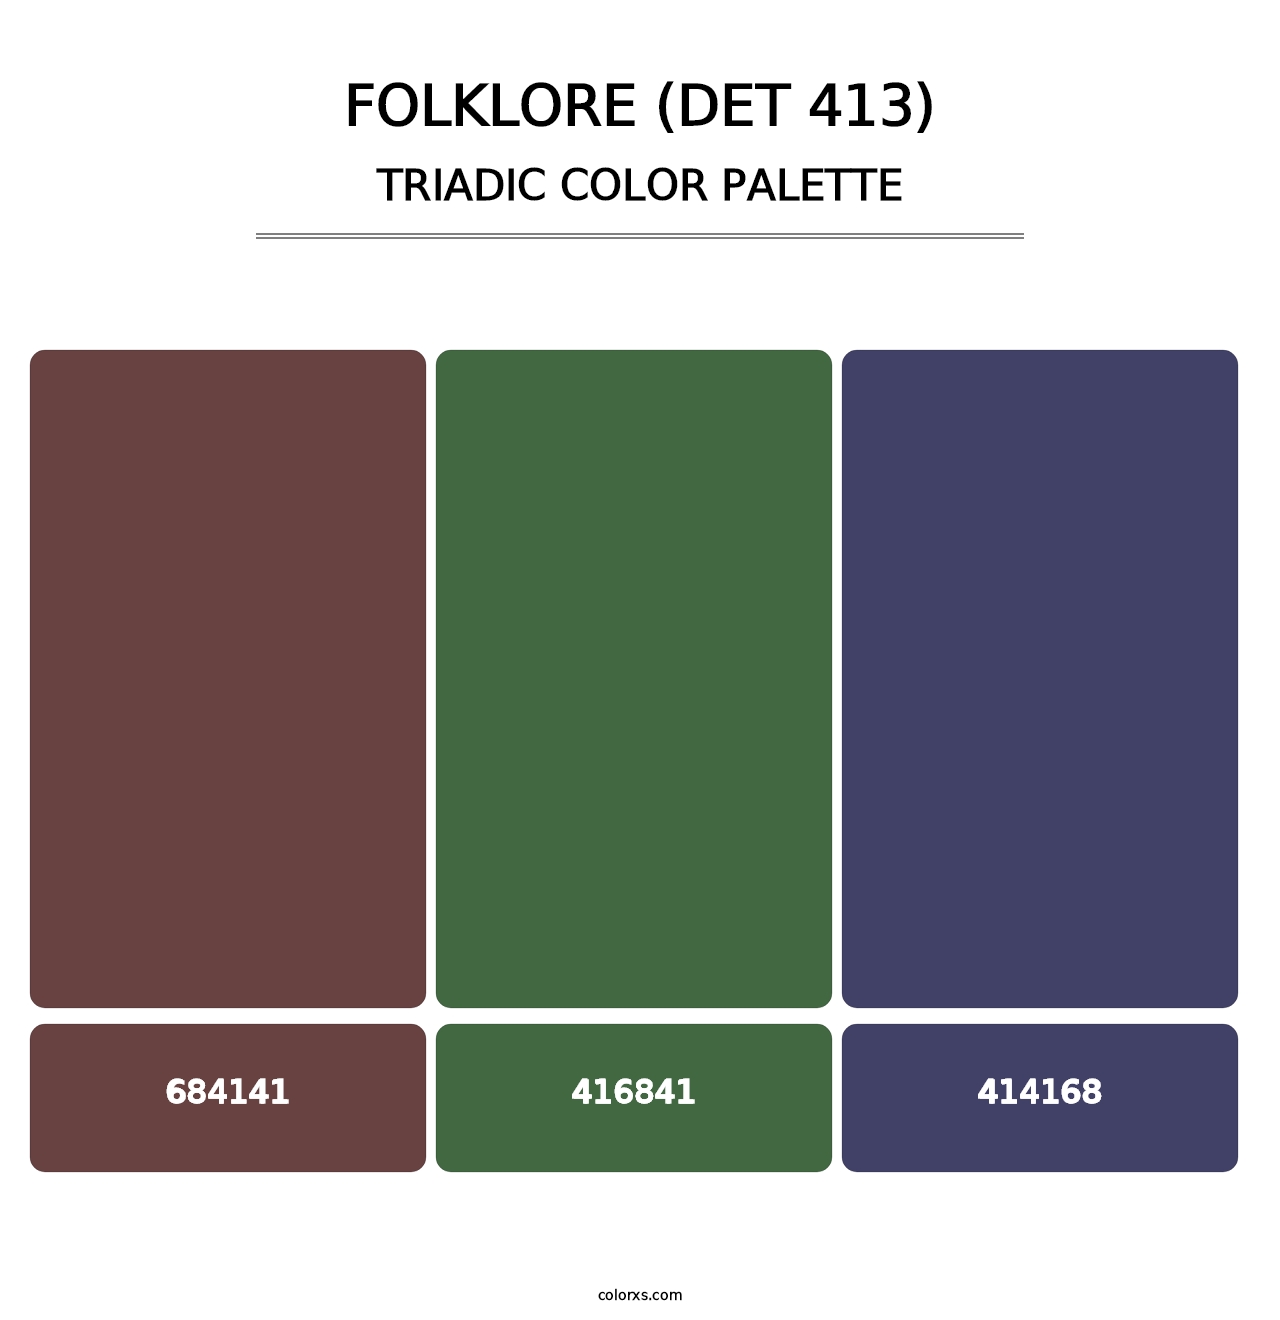 Folklore (DET 413) - Triadic Color Palette